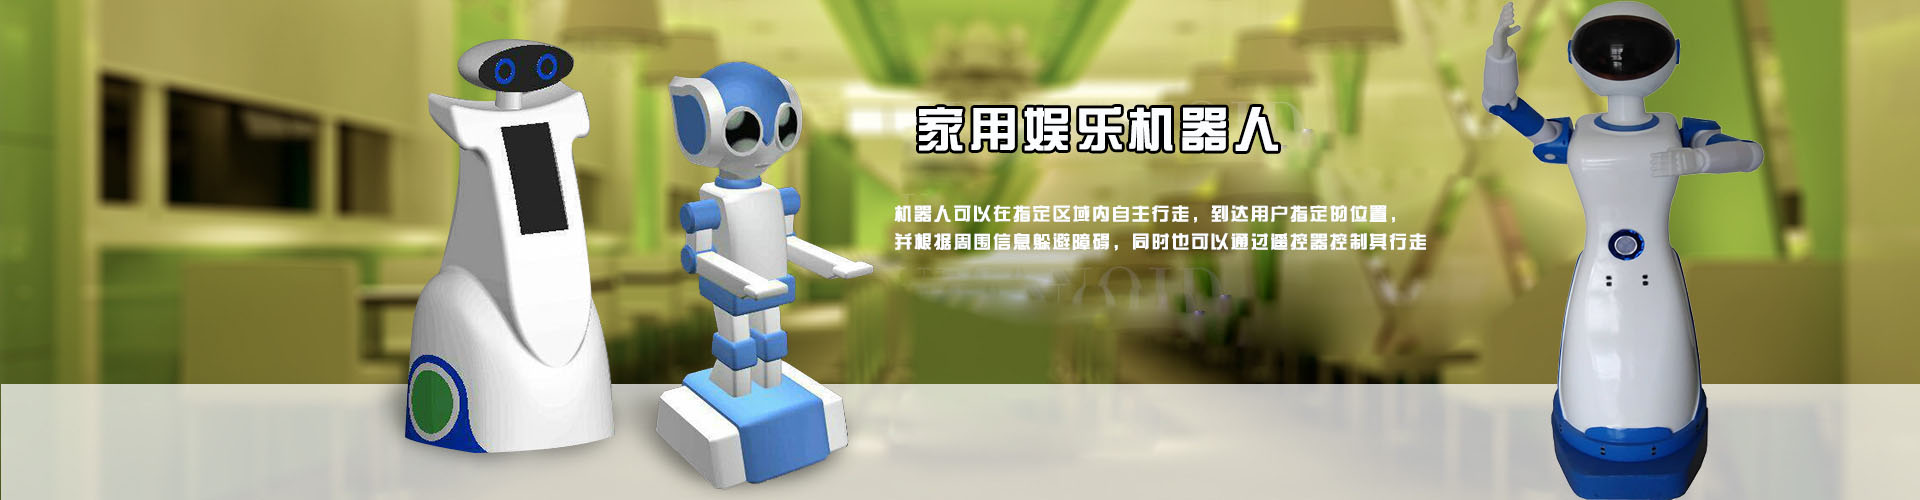 云南昆明迎宾机器人提高您餐厅的知名度